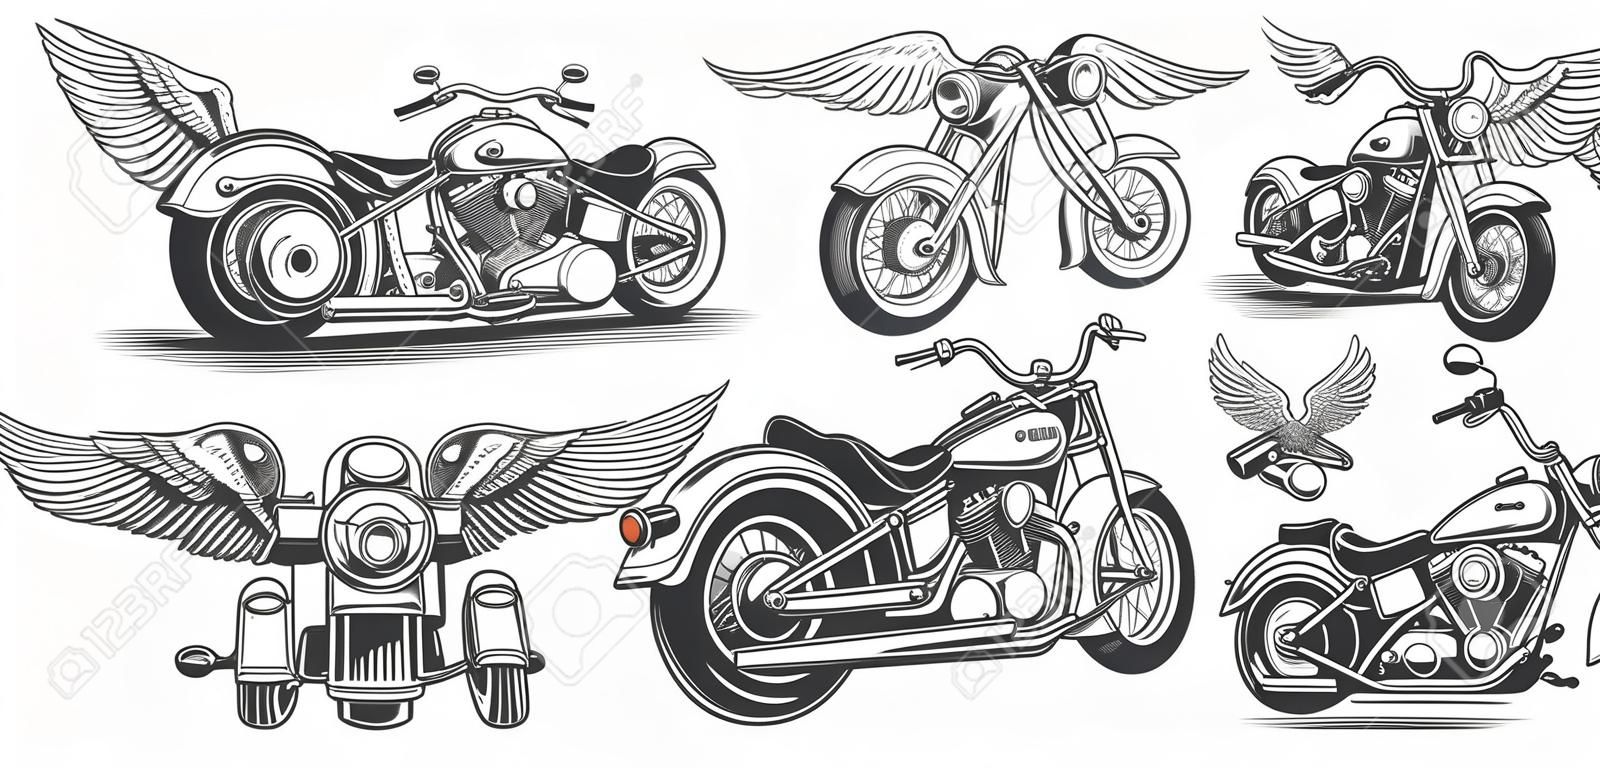 Zestaw ilustracji, ikony r? Cznie rysowane motocykla w ró? Nych k? Tach, czaszki, skrzyd? A w stylu grawerowania. Klasyczny chopper w stylu atramentowym. Drukowanie, grawerowanie, szablon, element projektu